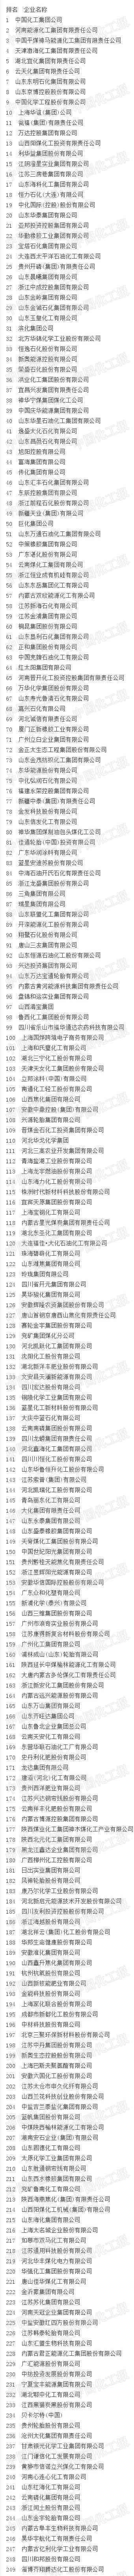 中国化工企业500强名单完整版